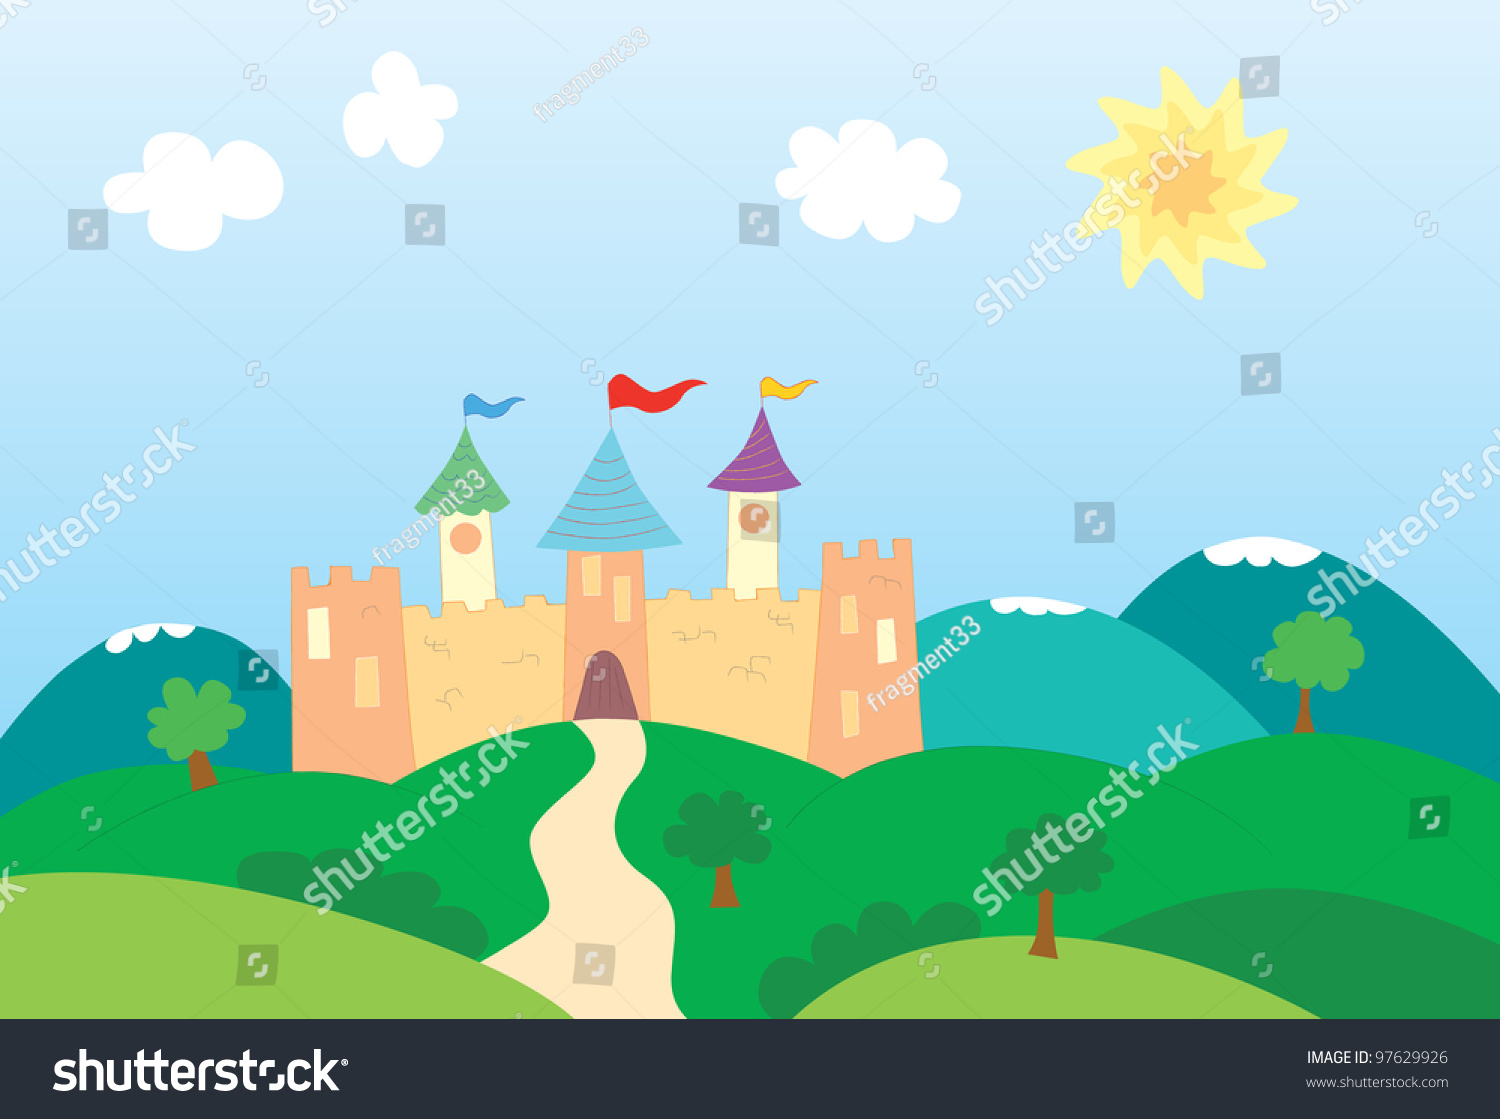 Vector Illustration Of A Cartoon Castle - 97629926 : Shutterstock